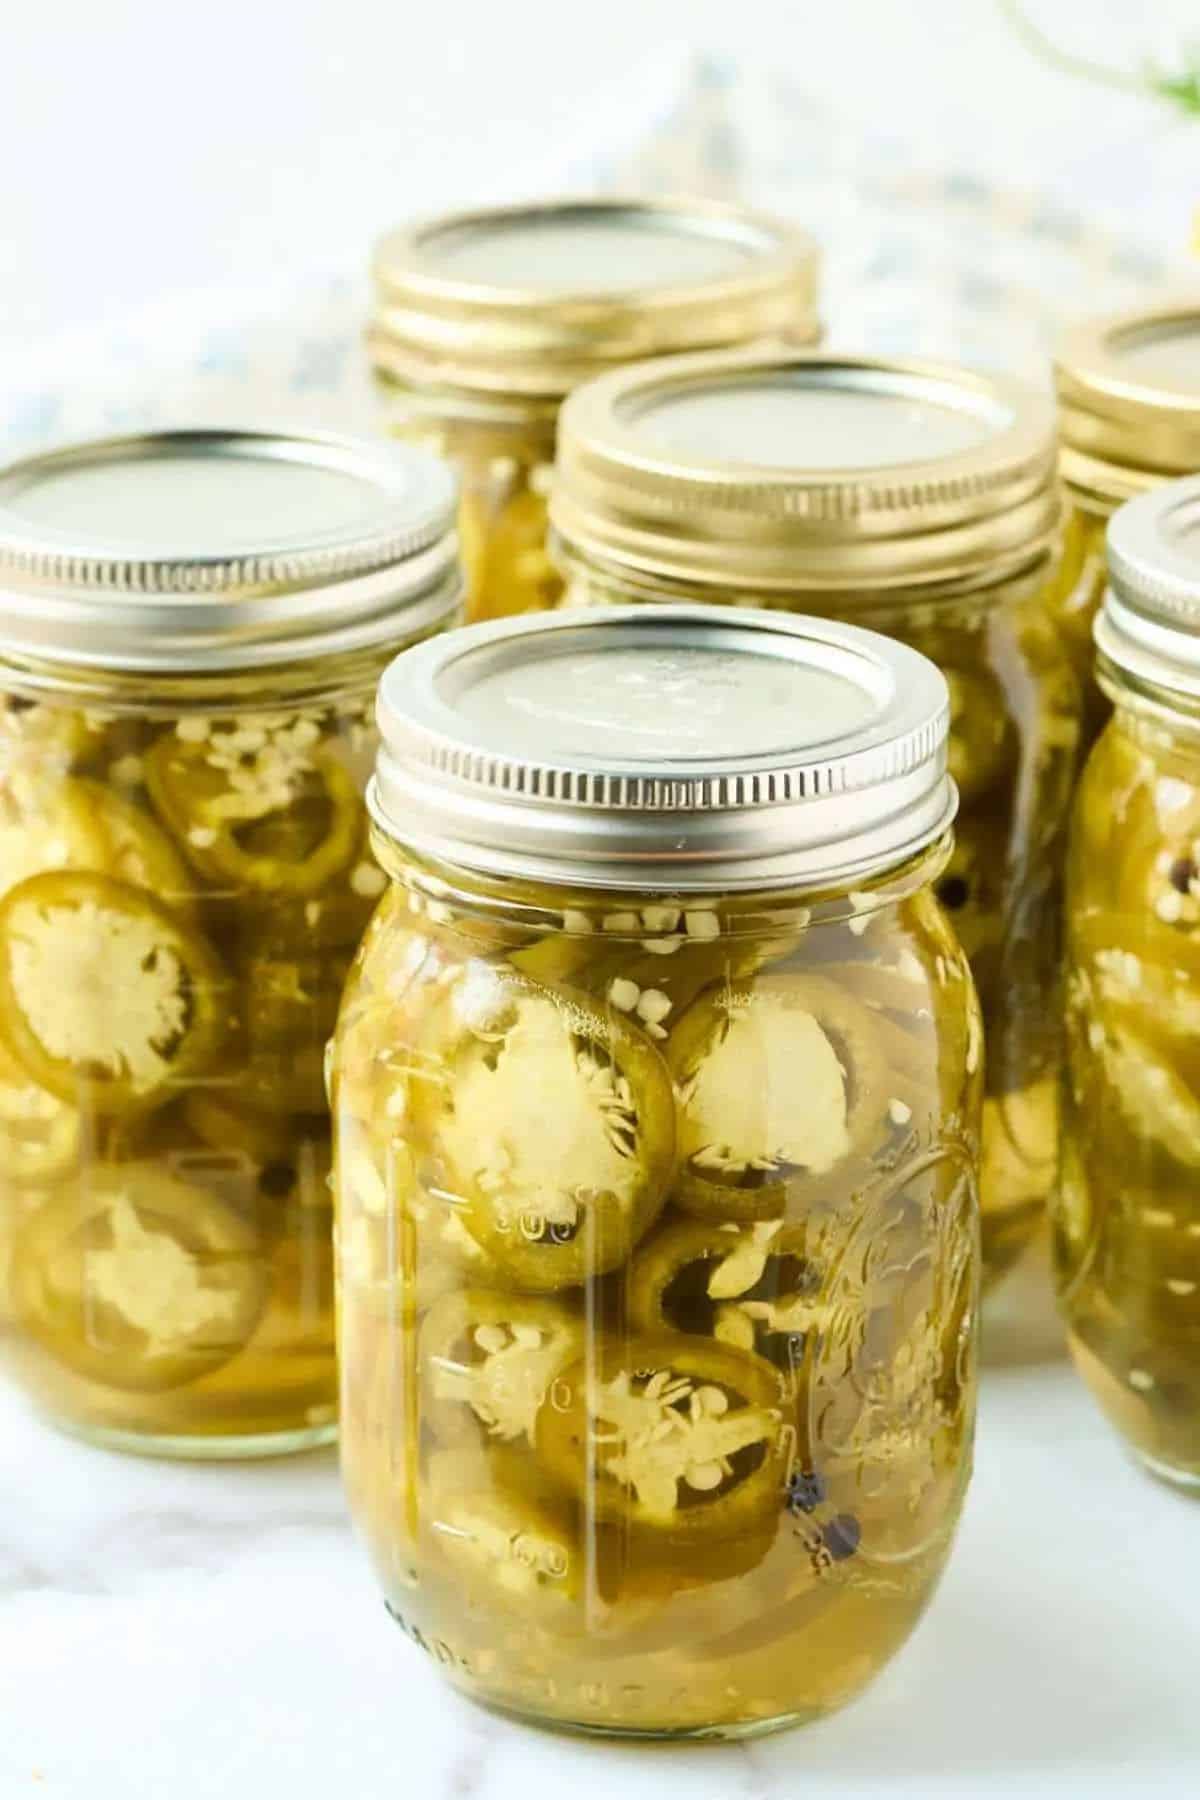 Pickled jalapeno slices in glass jars.